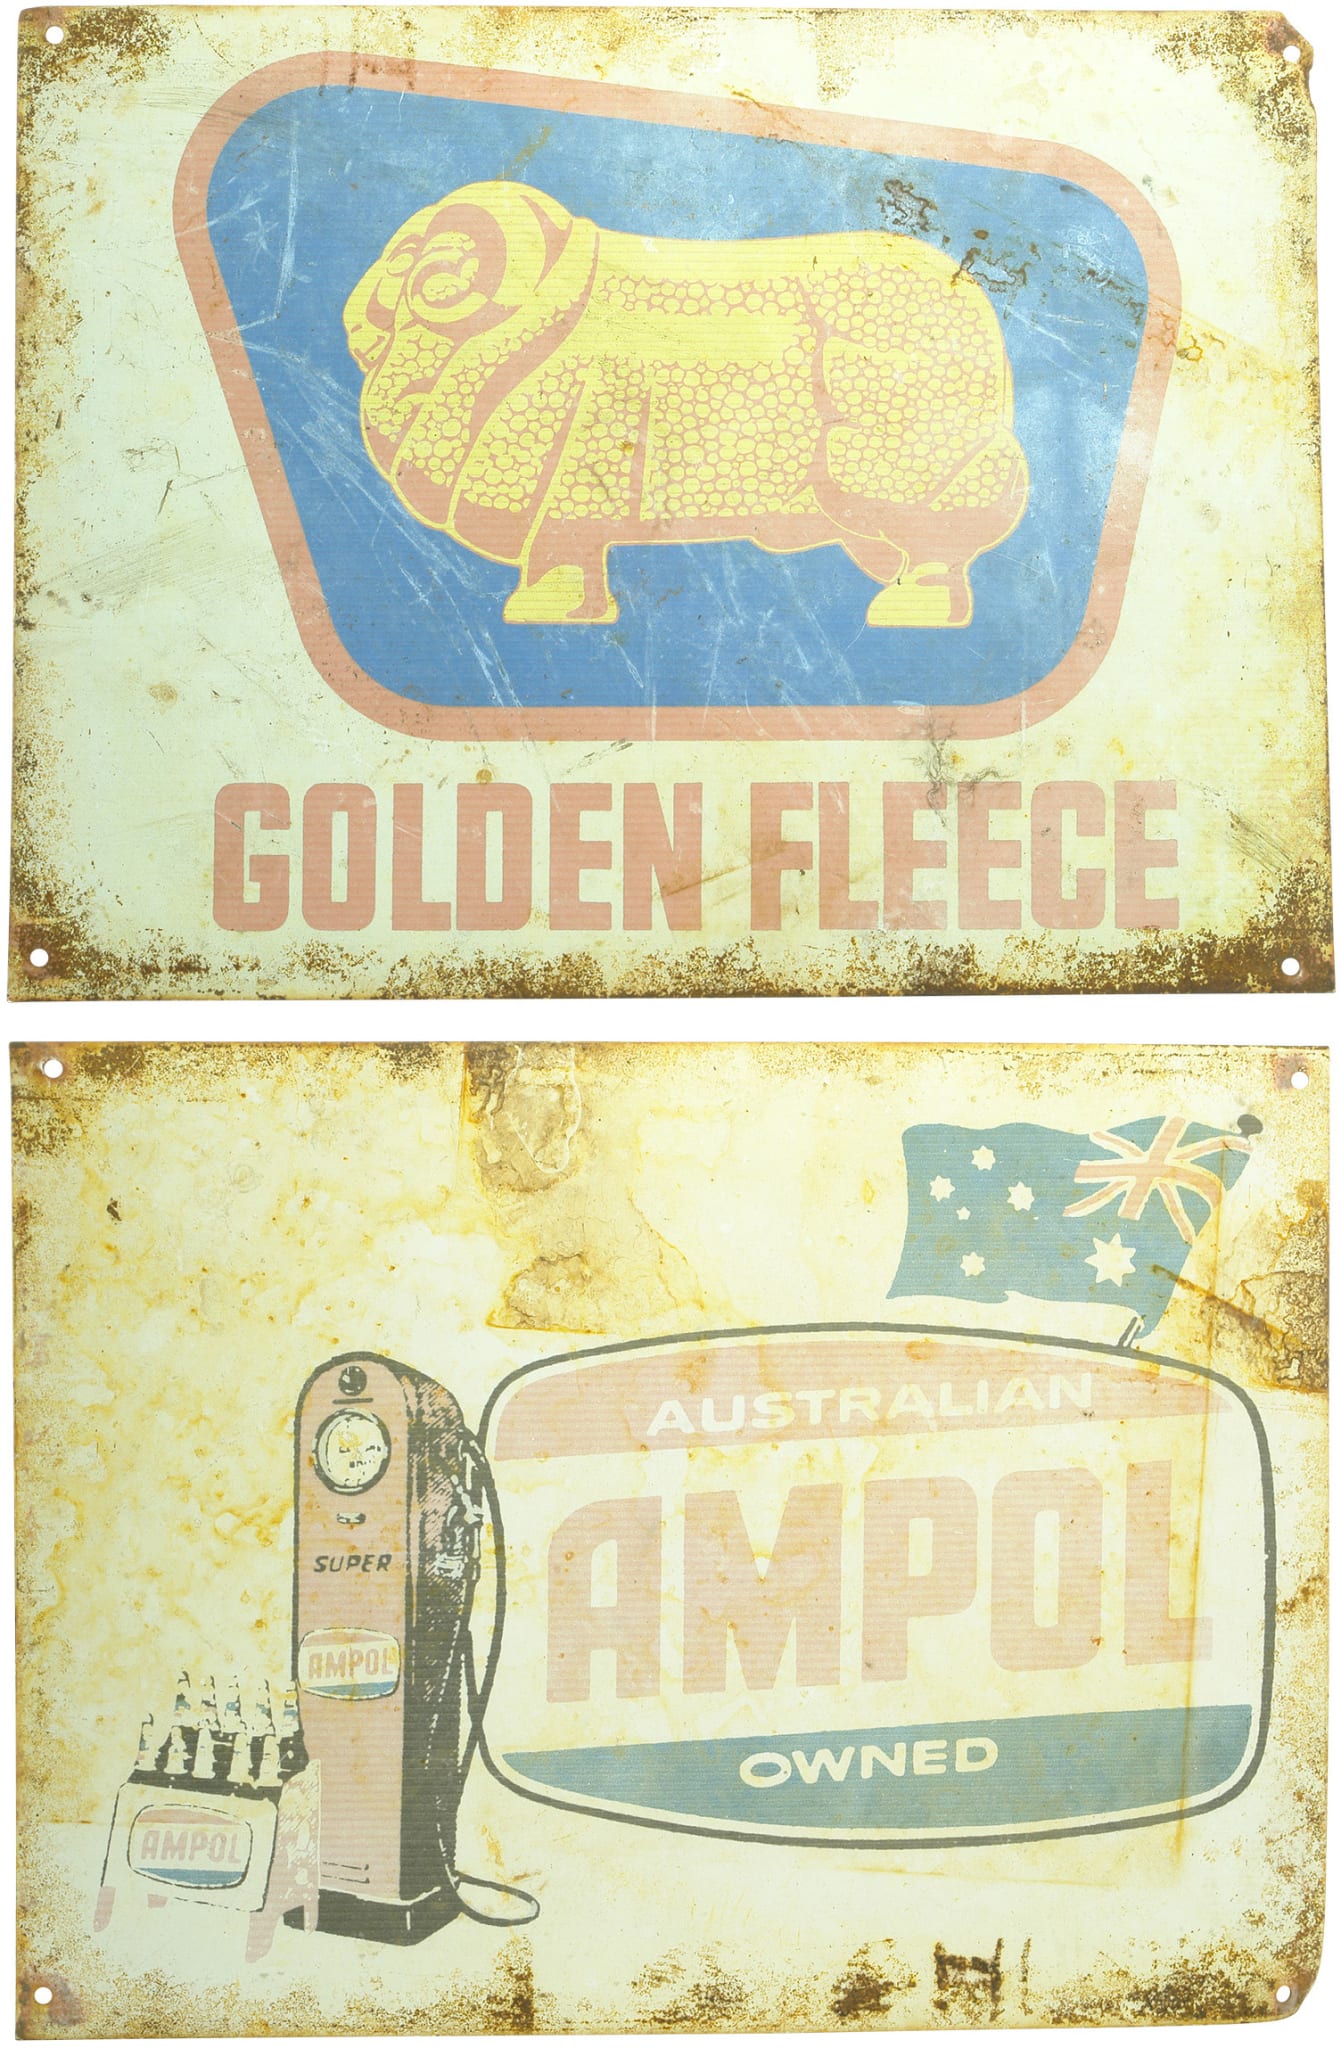 Reproduction Golden Fleece Ampol Signs